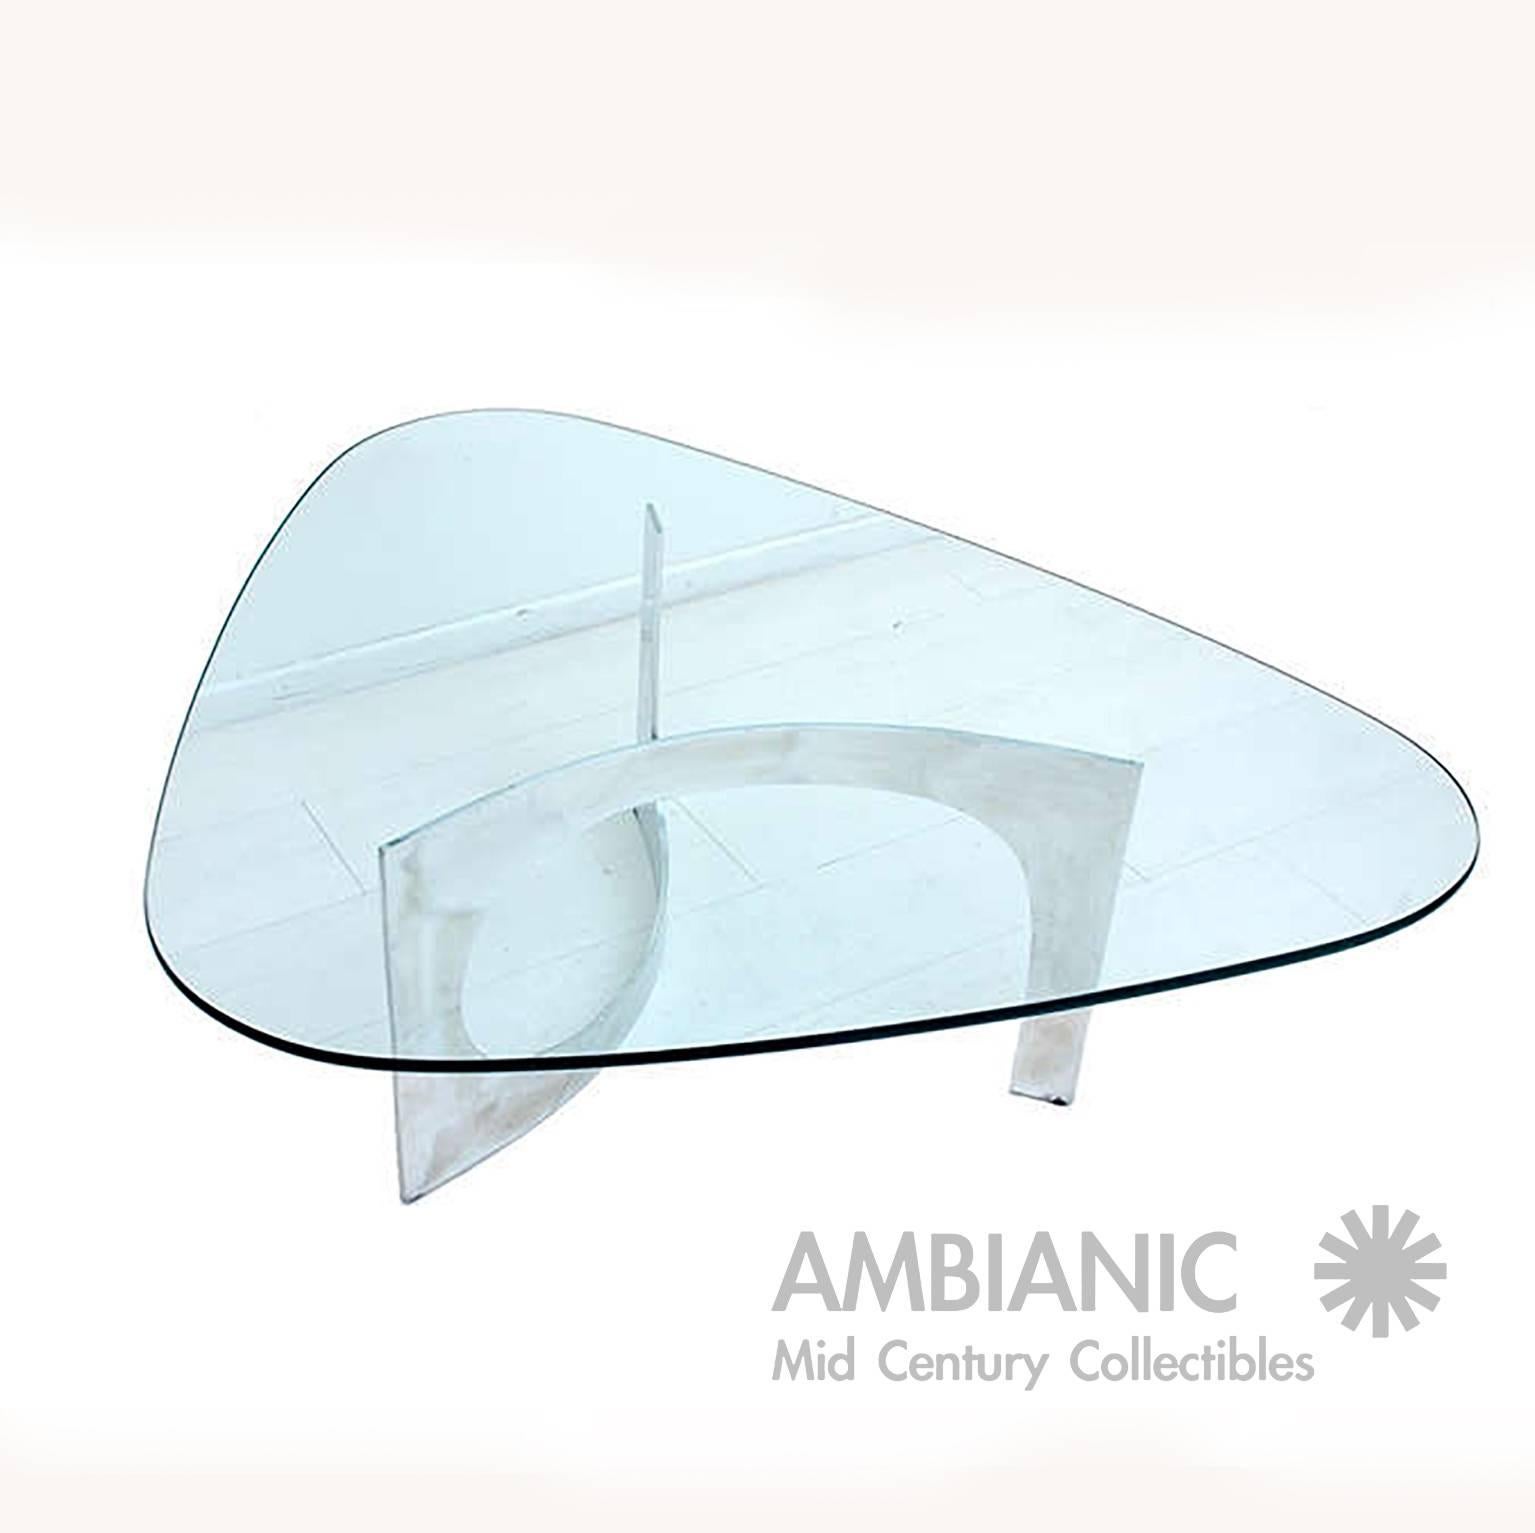 Mid-Century Modern Mid Century Modern Sculptural Aluminum Coffee Table